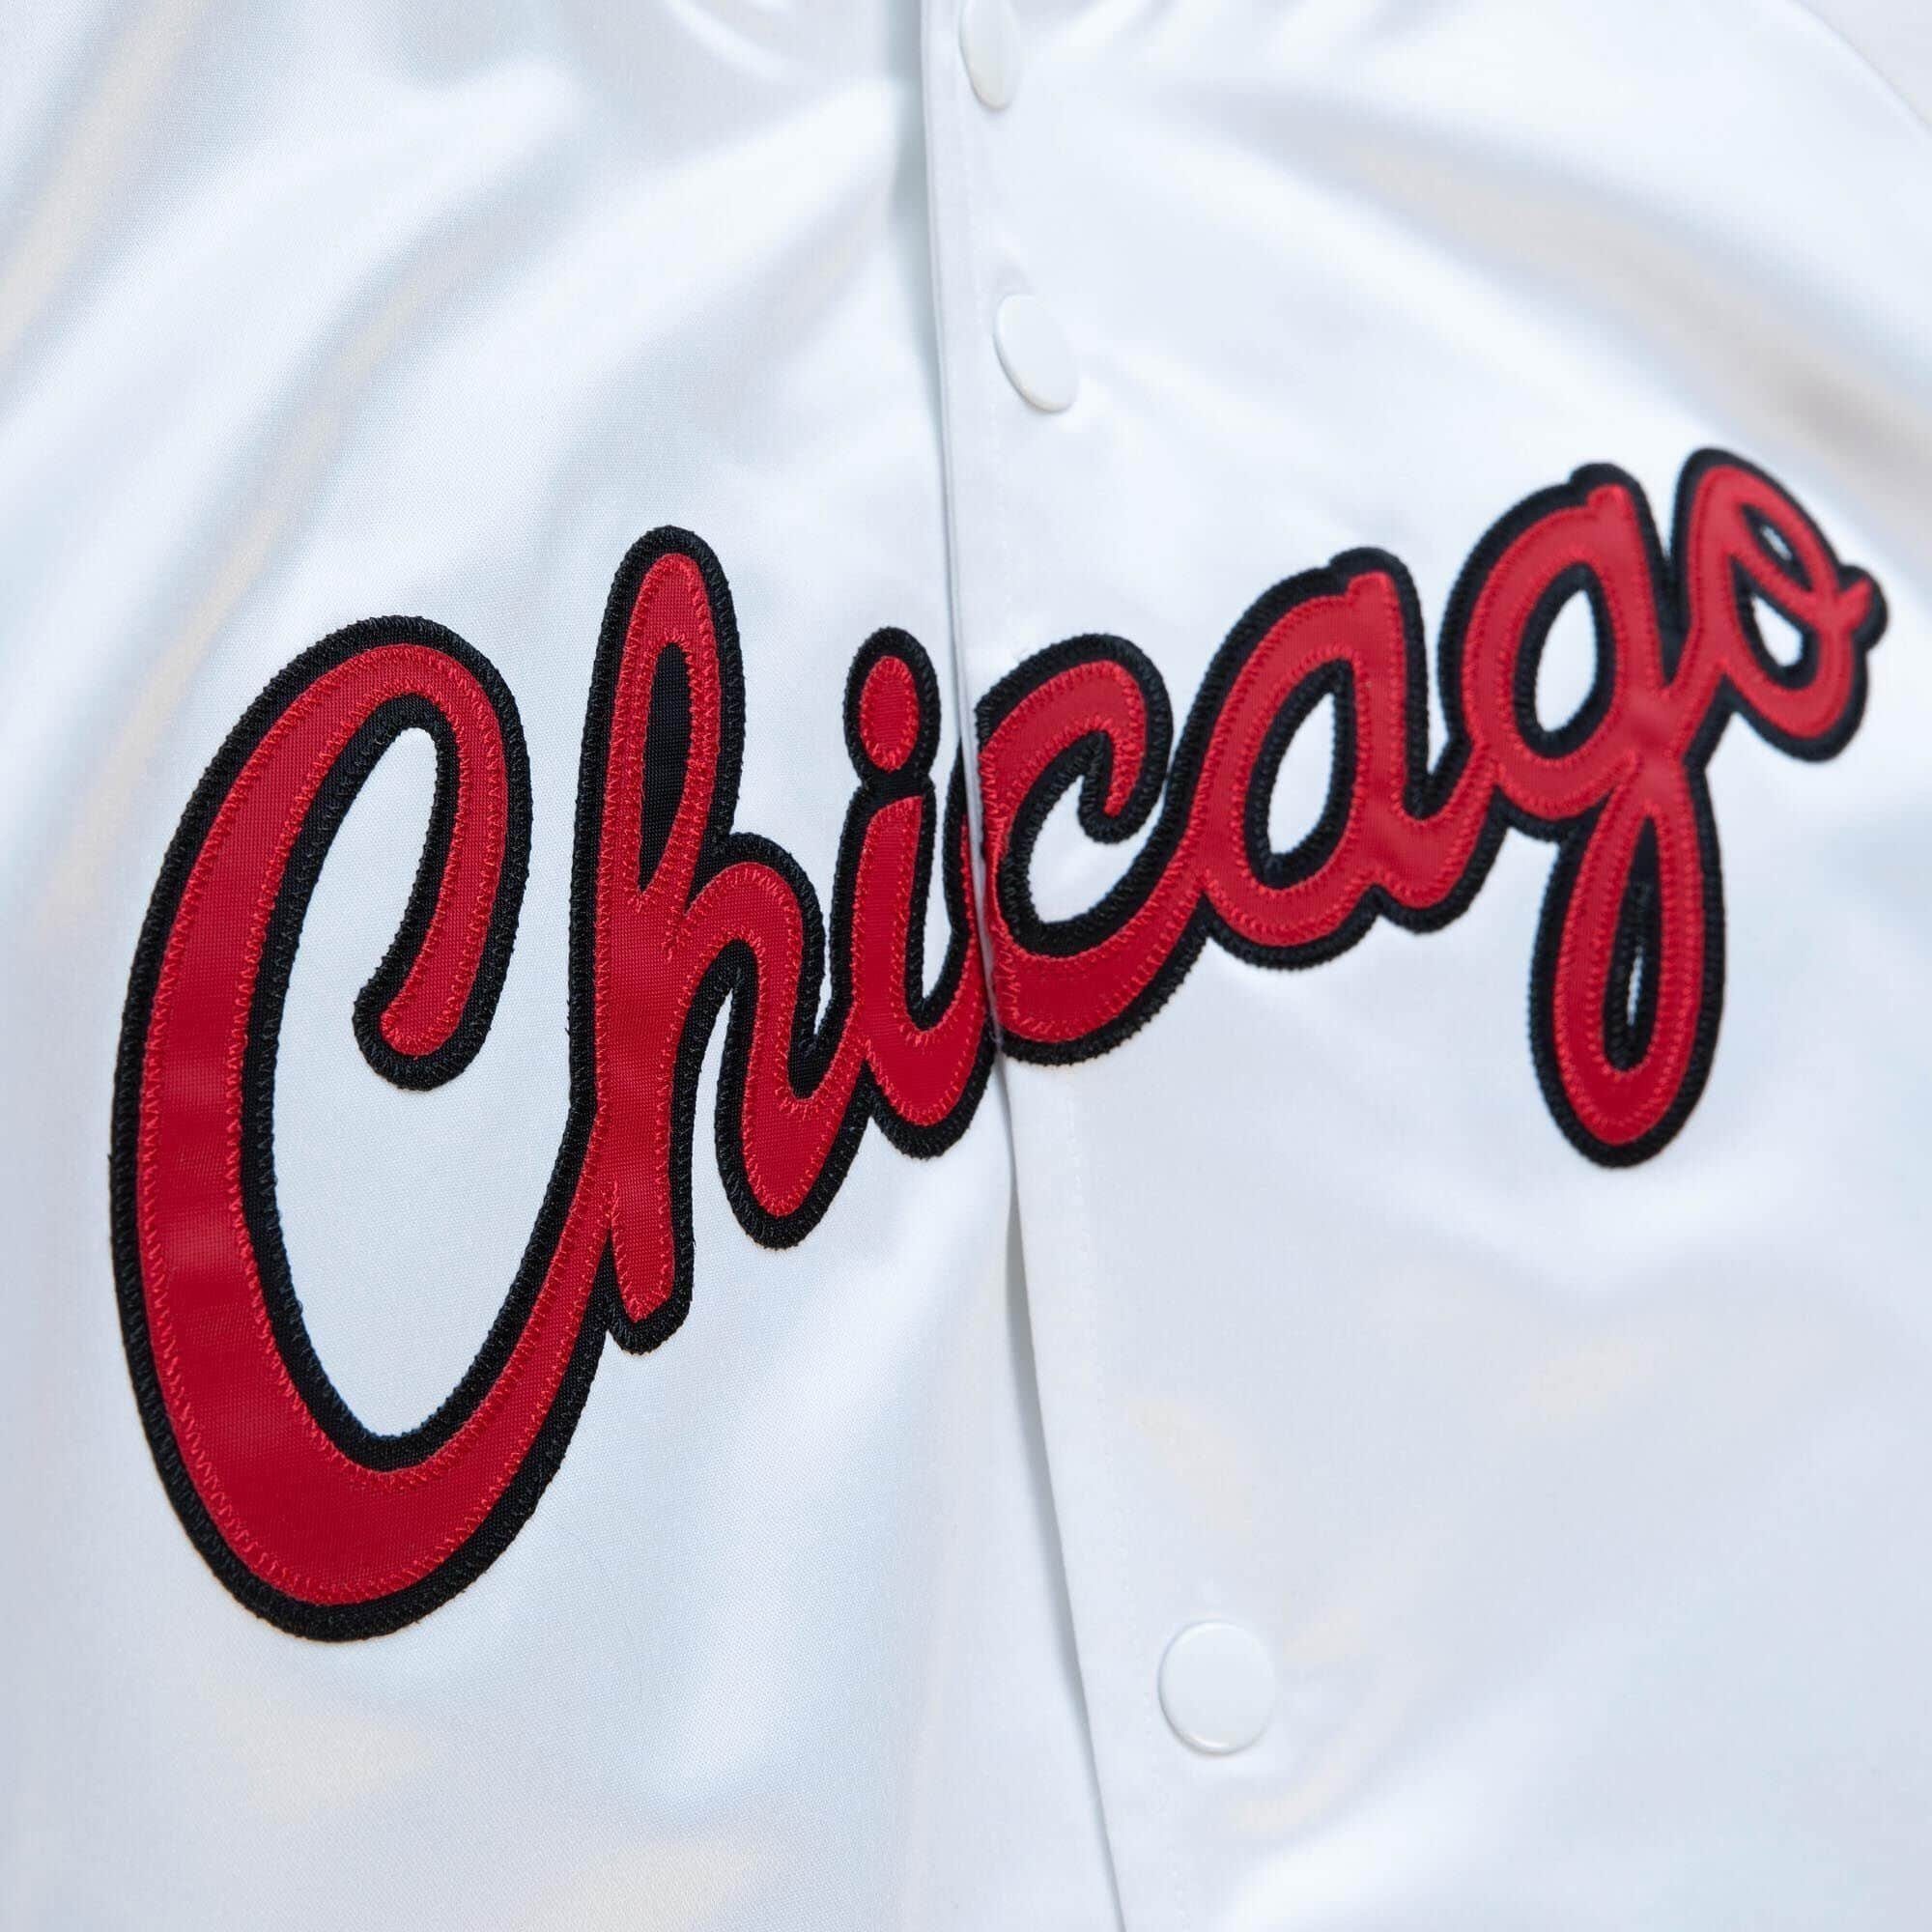 Mitchell & / Chicago Windbreaker Bulls White Satin Ness Red